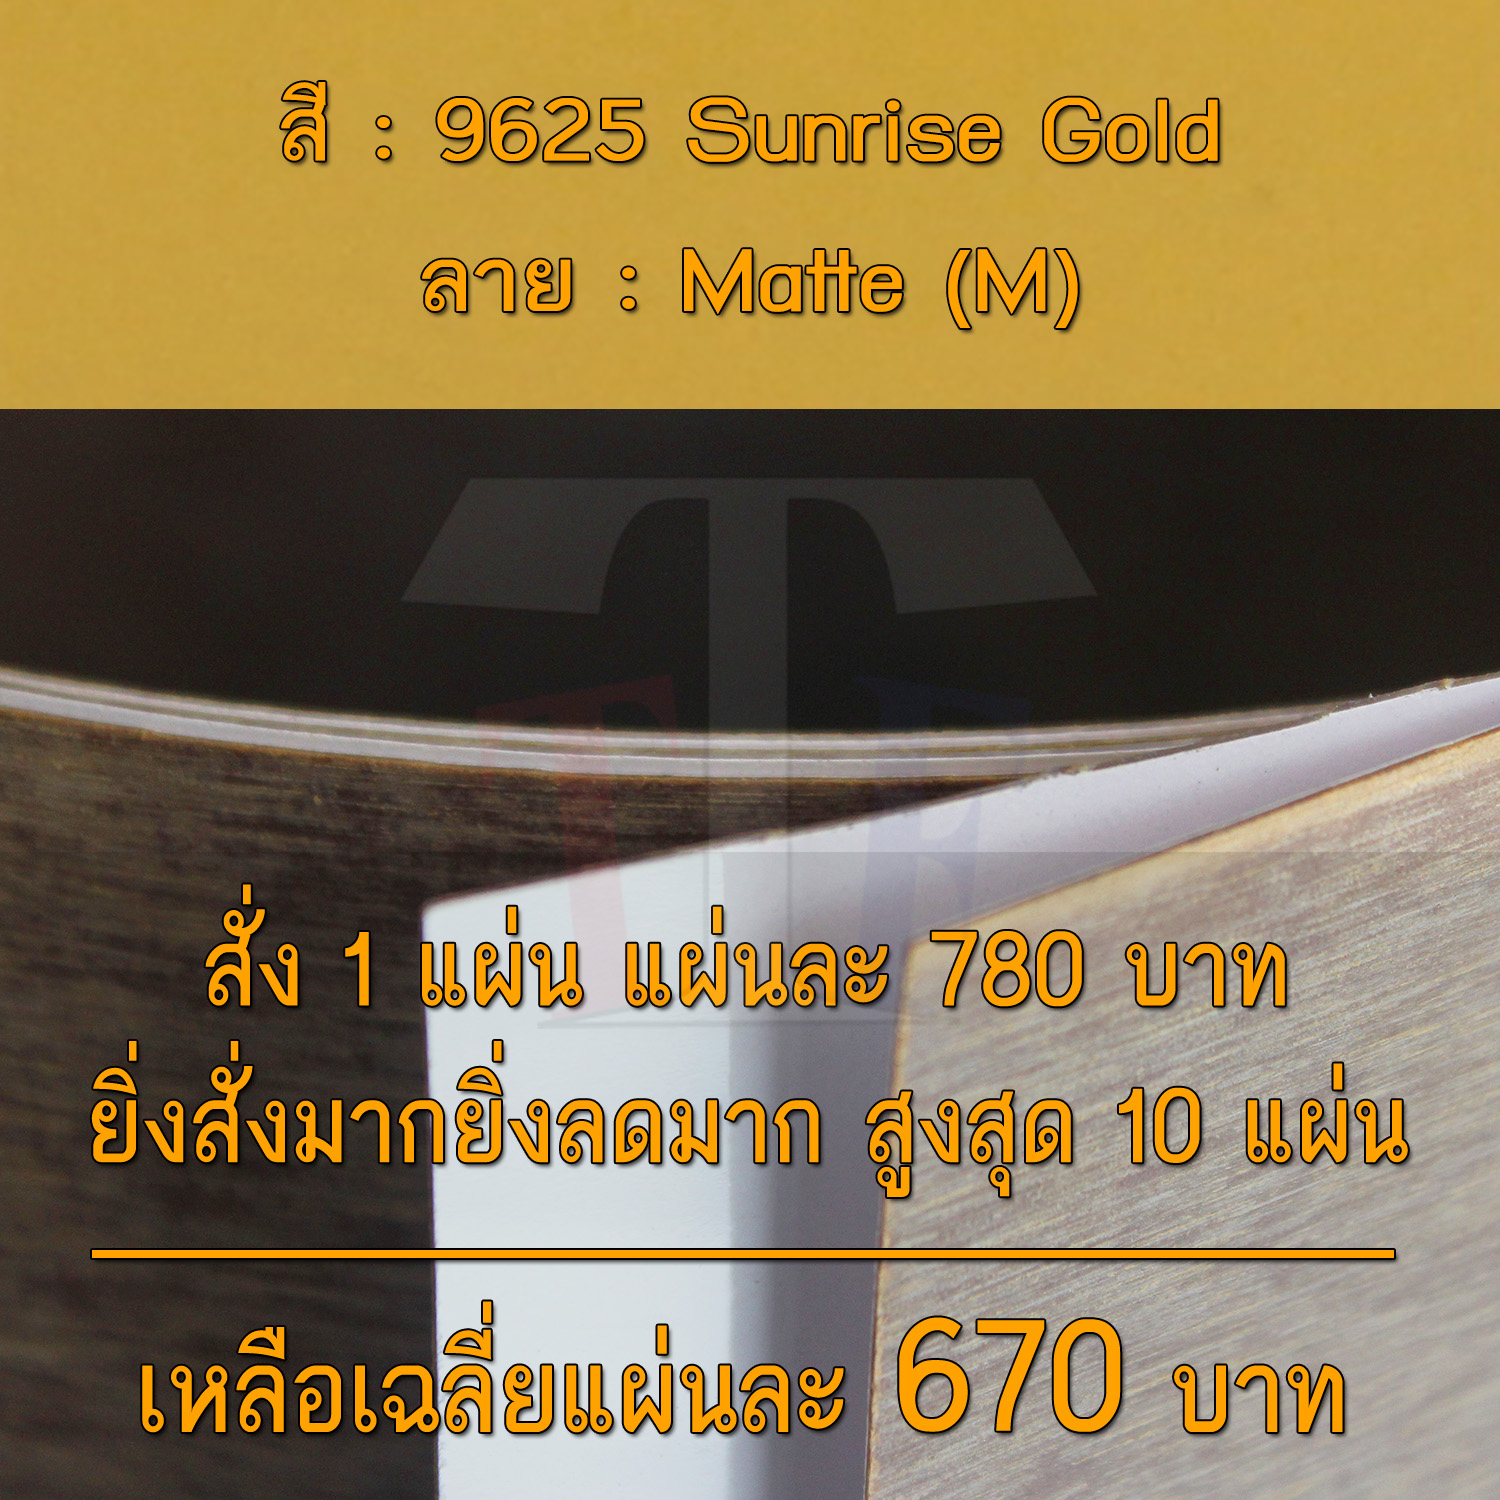 แผ่นโฟเมก้า แผ่นลามิเนต ยี่ห้อ TD Board สีทอง รหัส 9625 Sunrise Gold พื้นผิวลาย Matte (M) ขนาด 1220 x 2440 มม. หนา 0.70 มม. ใช้สำหรับงานตกแต่งภายใน งานปิดผิวเฟอร์นิเจอร์ ผนัง และอื่นๆ เพื่อเพิ่มความสวยงาม formica laminate 9625M